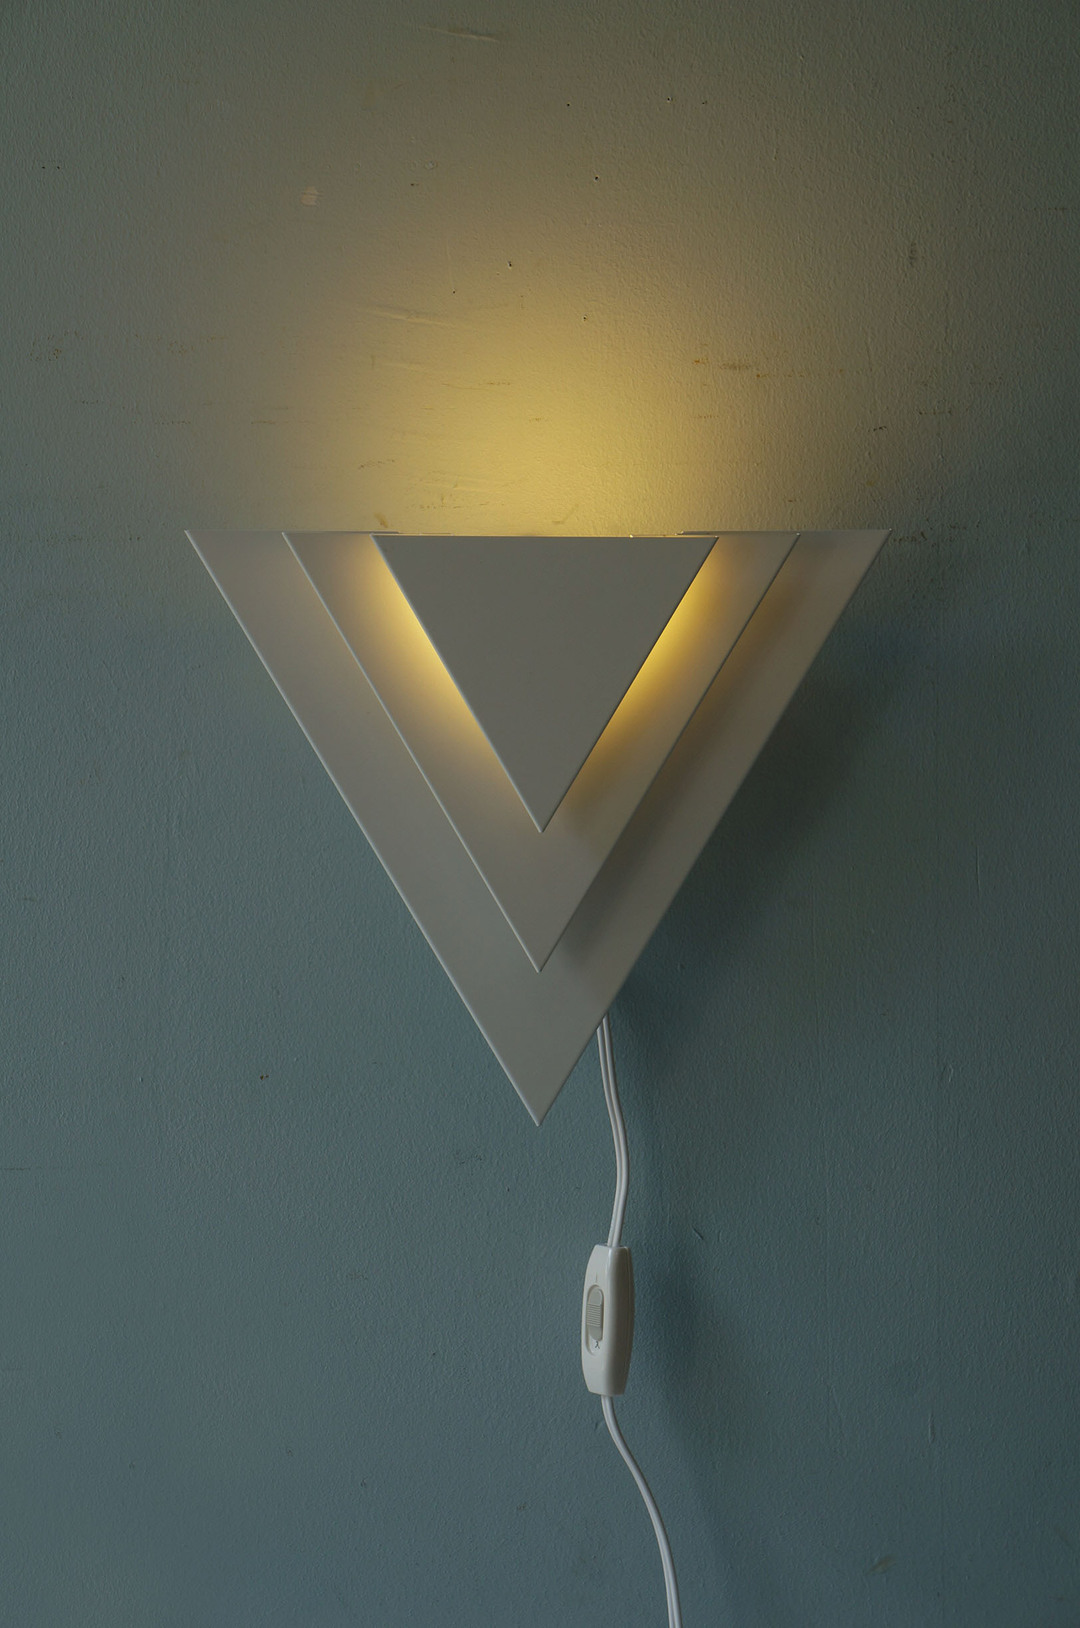 KOIZUMI Triangle Wall Lamp/コイズミ ウォールランプ ブラケットライト 間接照明 イタリアンモダン デザイン インテリア 1